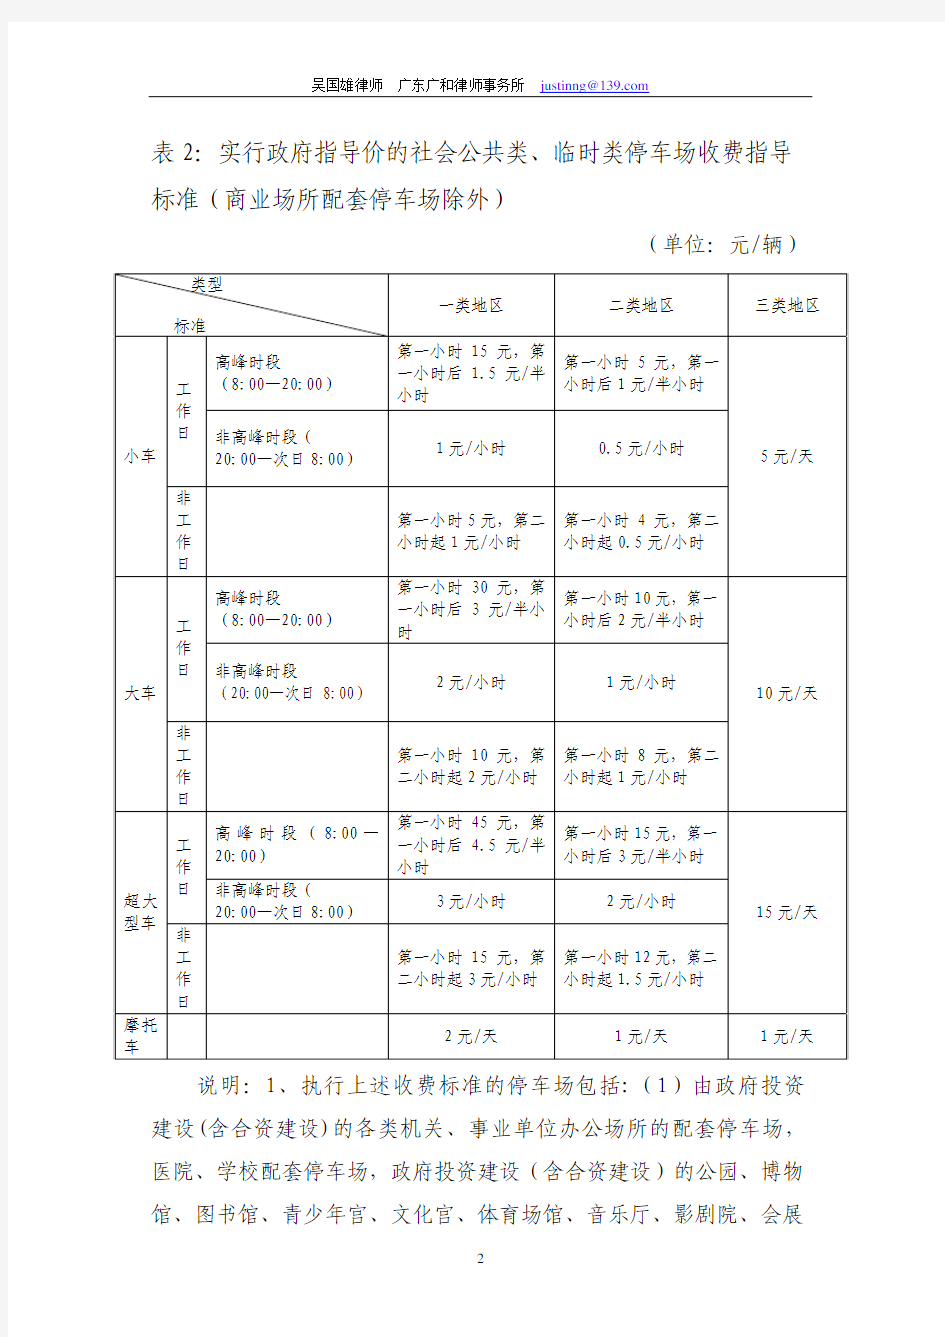 深圳市停车场收费标准表